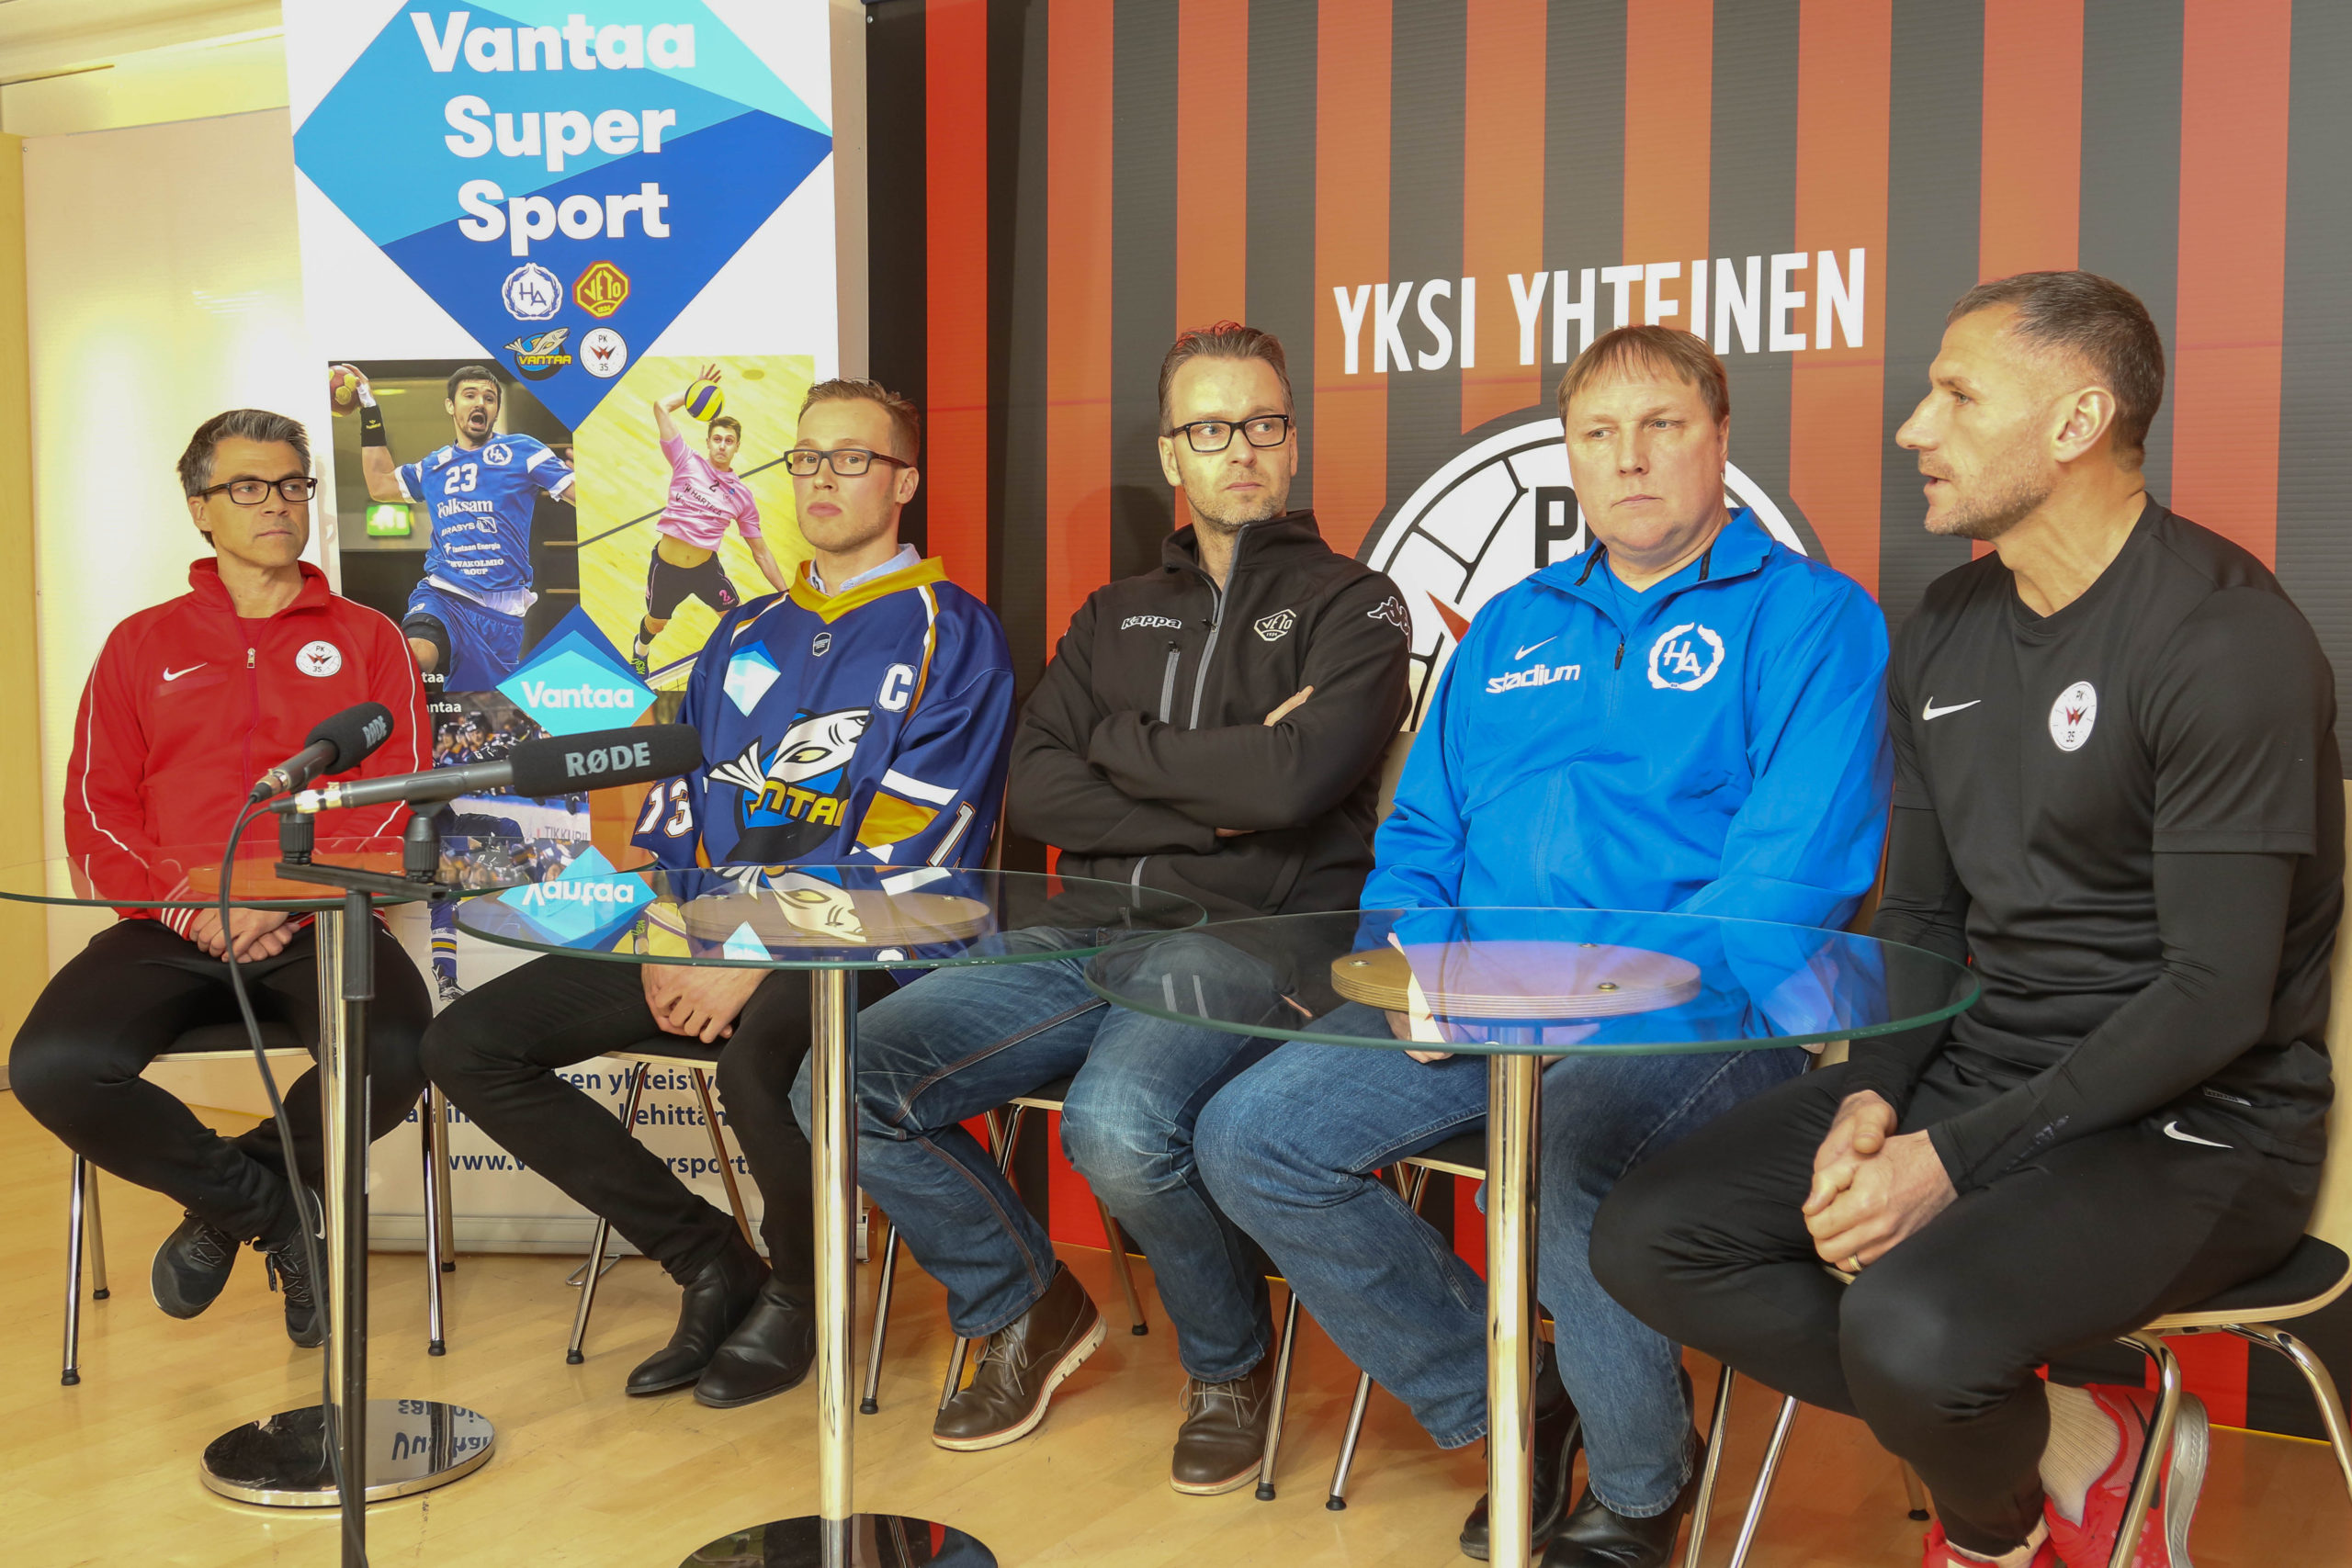 Vantaa Super Sport – Vantaan kaupungin ja palloilun kärkiseurojen uusi yhteistyöhanke